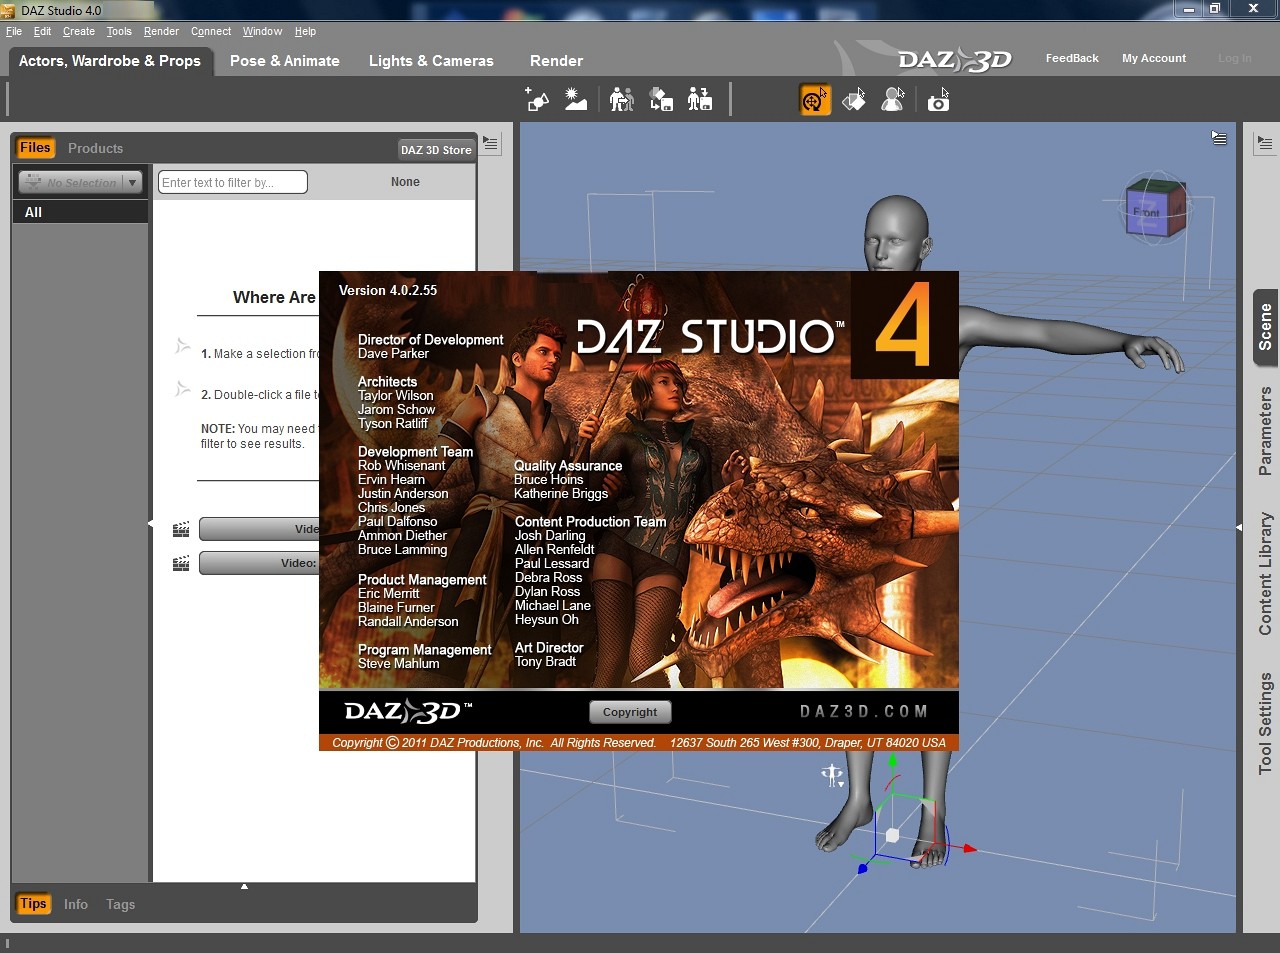 daz3d 4.9 studio software download